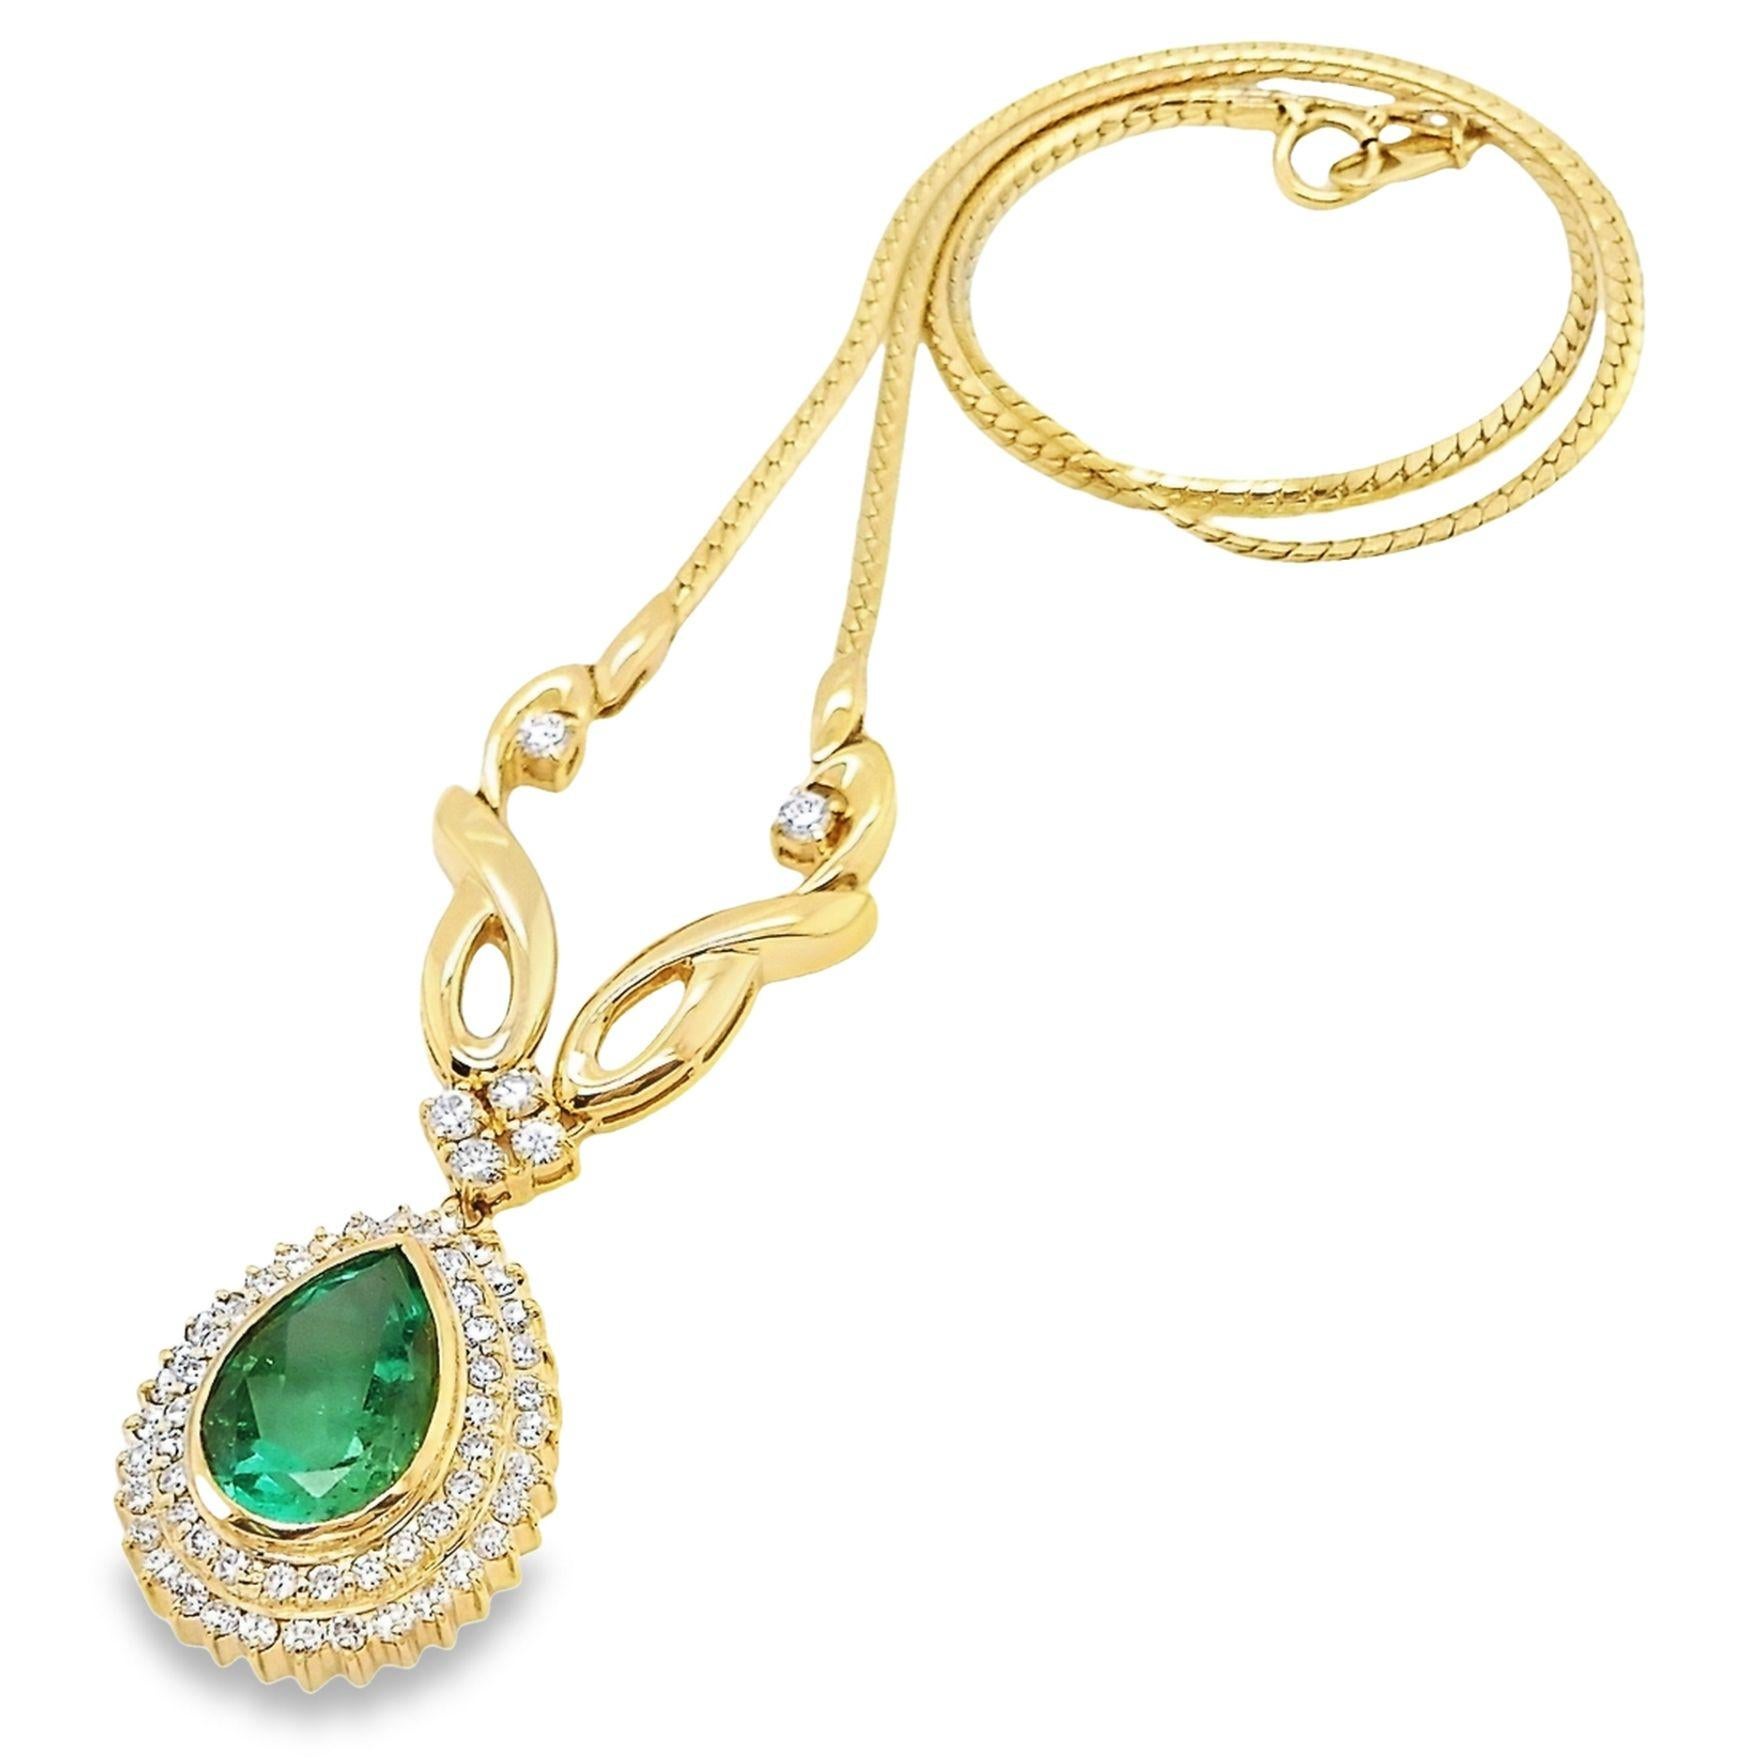 Erhöhen Sie Ihren Stil mit der 5,14-karätigen, intensiv grünen kolumbianischen Smaragd-Halskette von Top Crown Jewelry. Dieses luxuriöse Schmuckstück hängt an einer Kette aus 18 Karat Gelbgold und ist mit 1,46 Karat natürlichen, runden Diamanten im